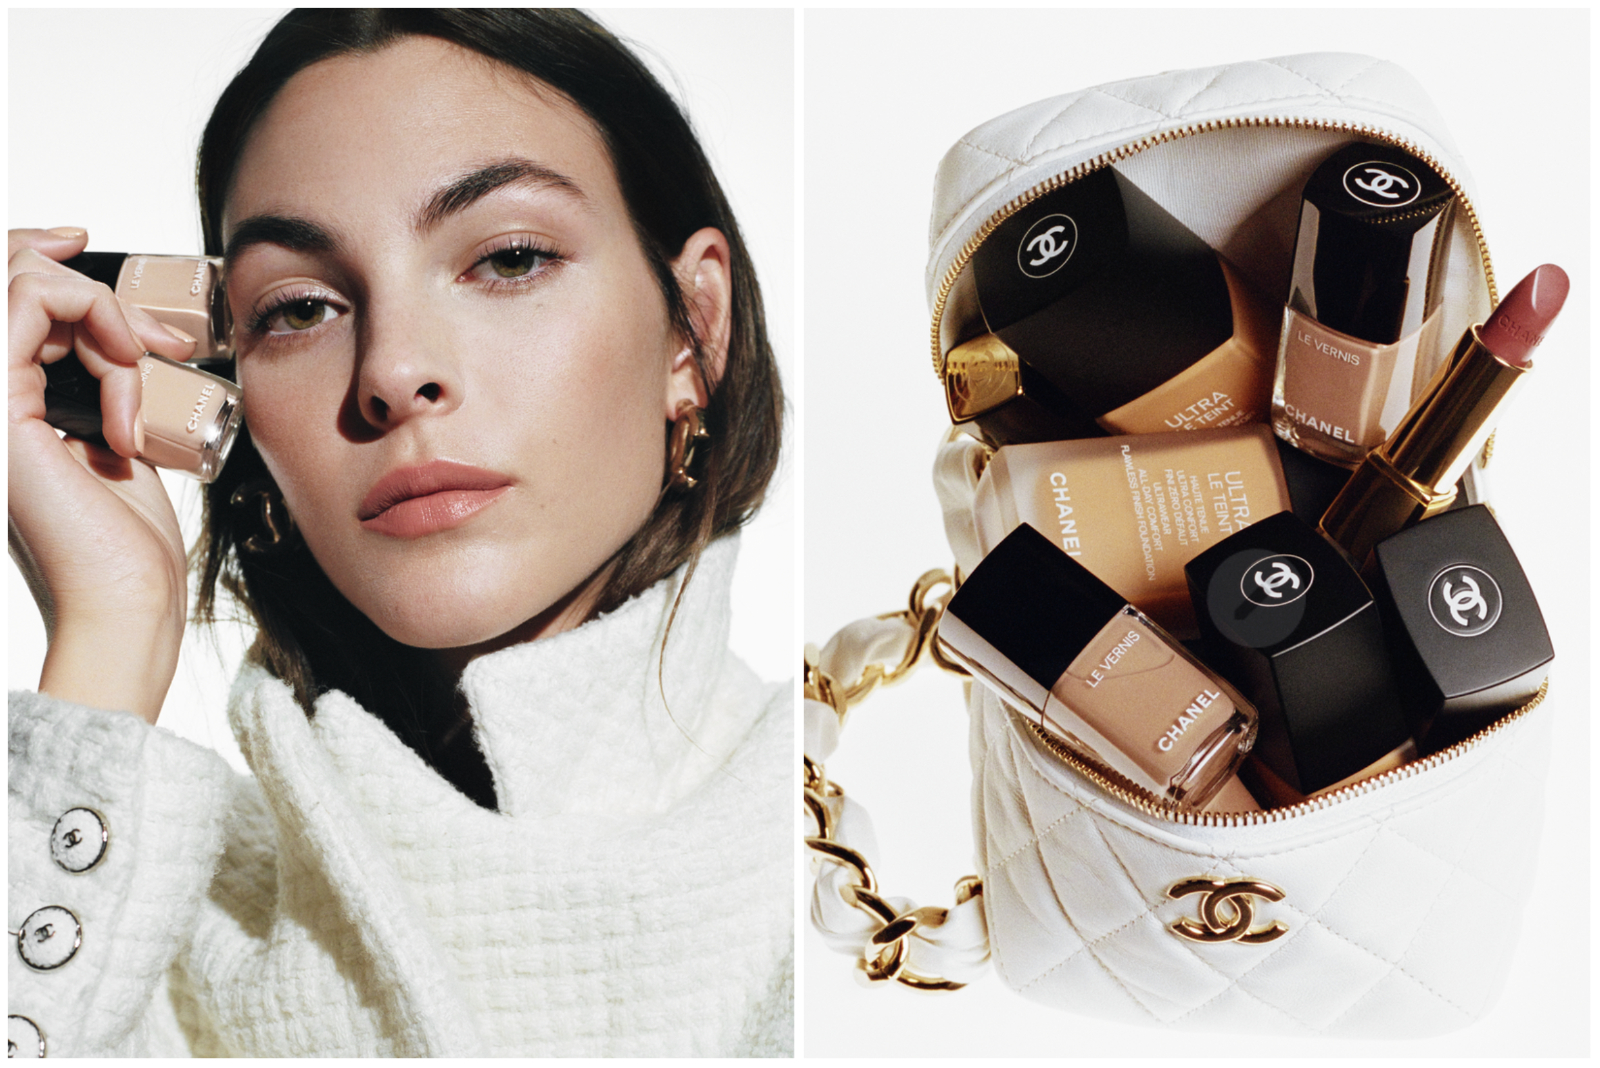 Prvi pogled na Chanelovu make up kolekciju za jesen i zimu